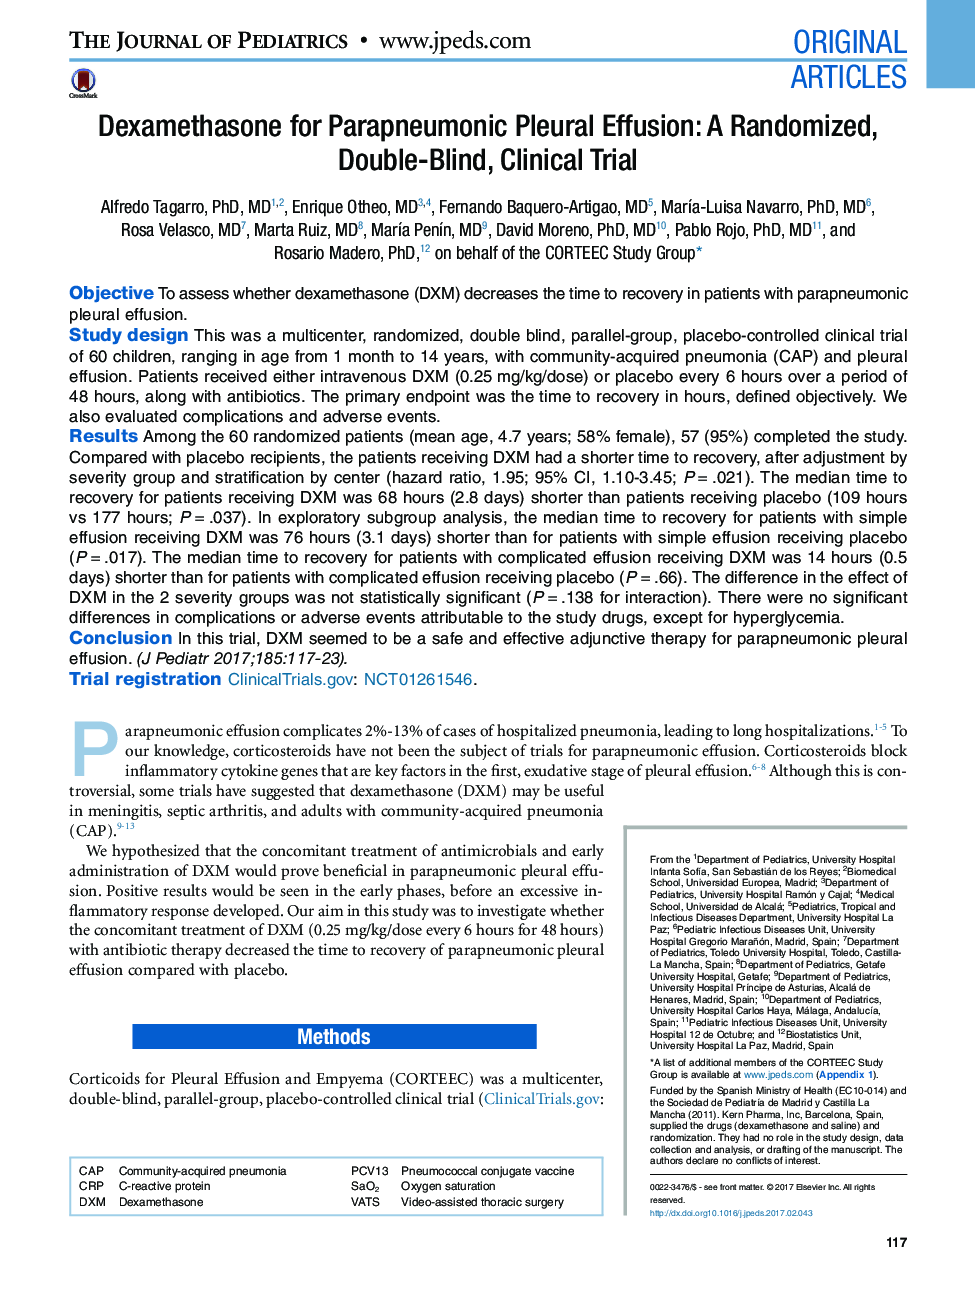 مقالات اصلی دگزامتازون برای عفونت پارالمپومونیک پلورال: یک آزمایش تصادفی، دوبار کلیک، آزمایش بالینی 